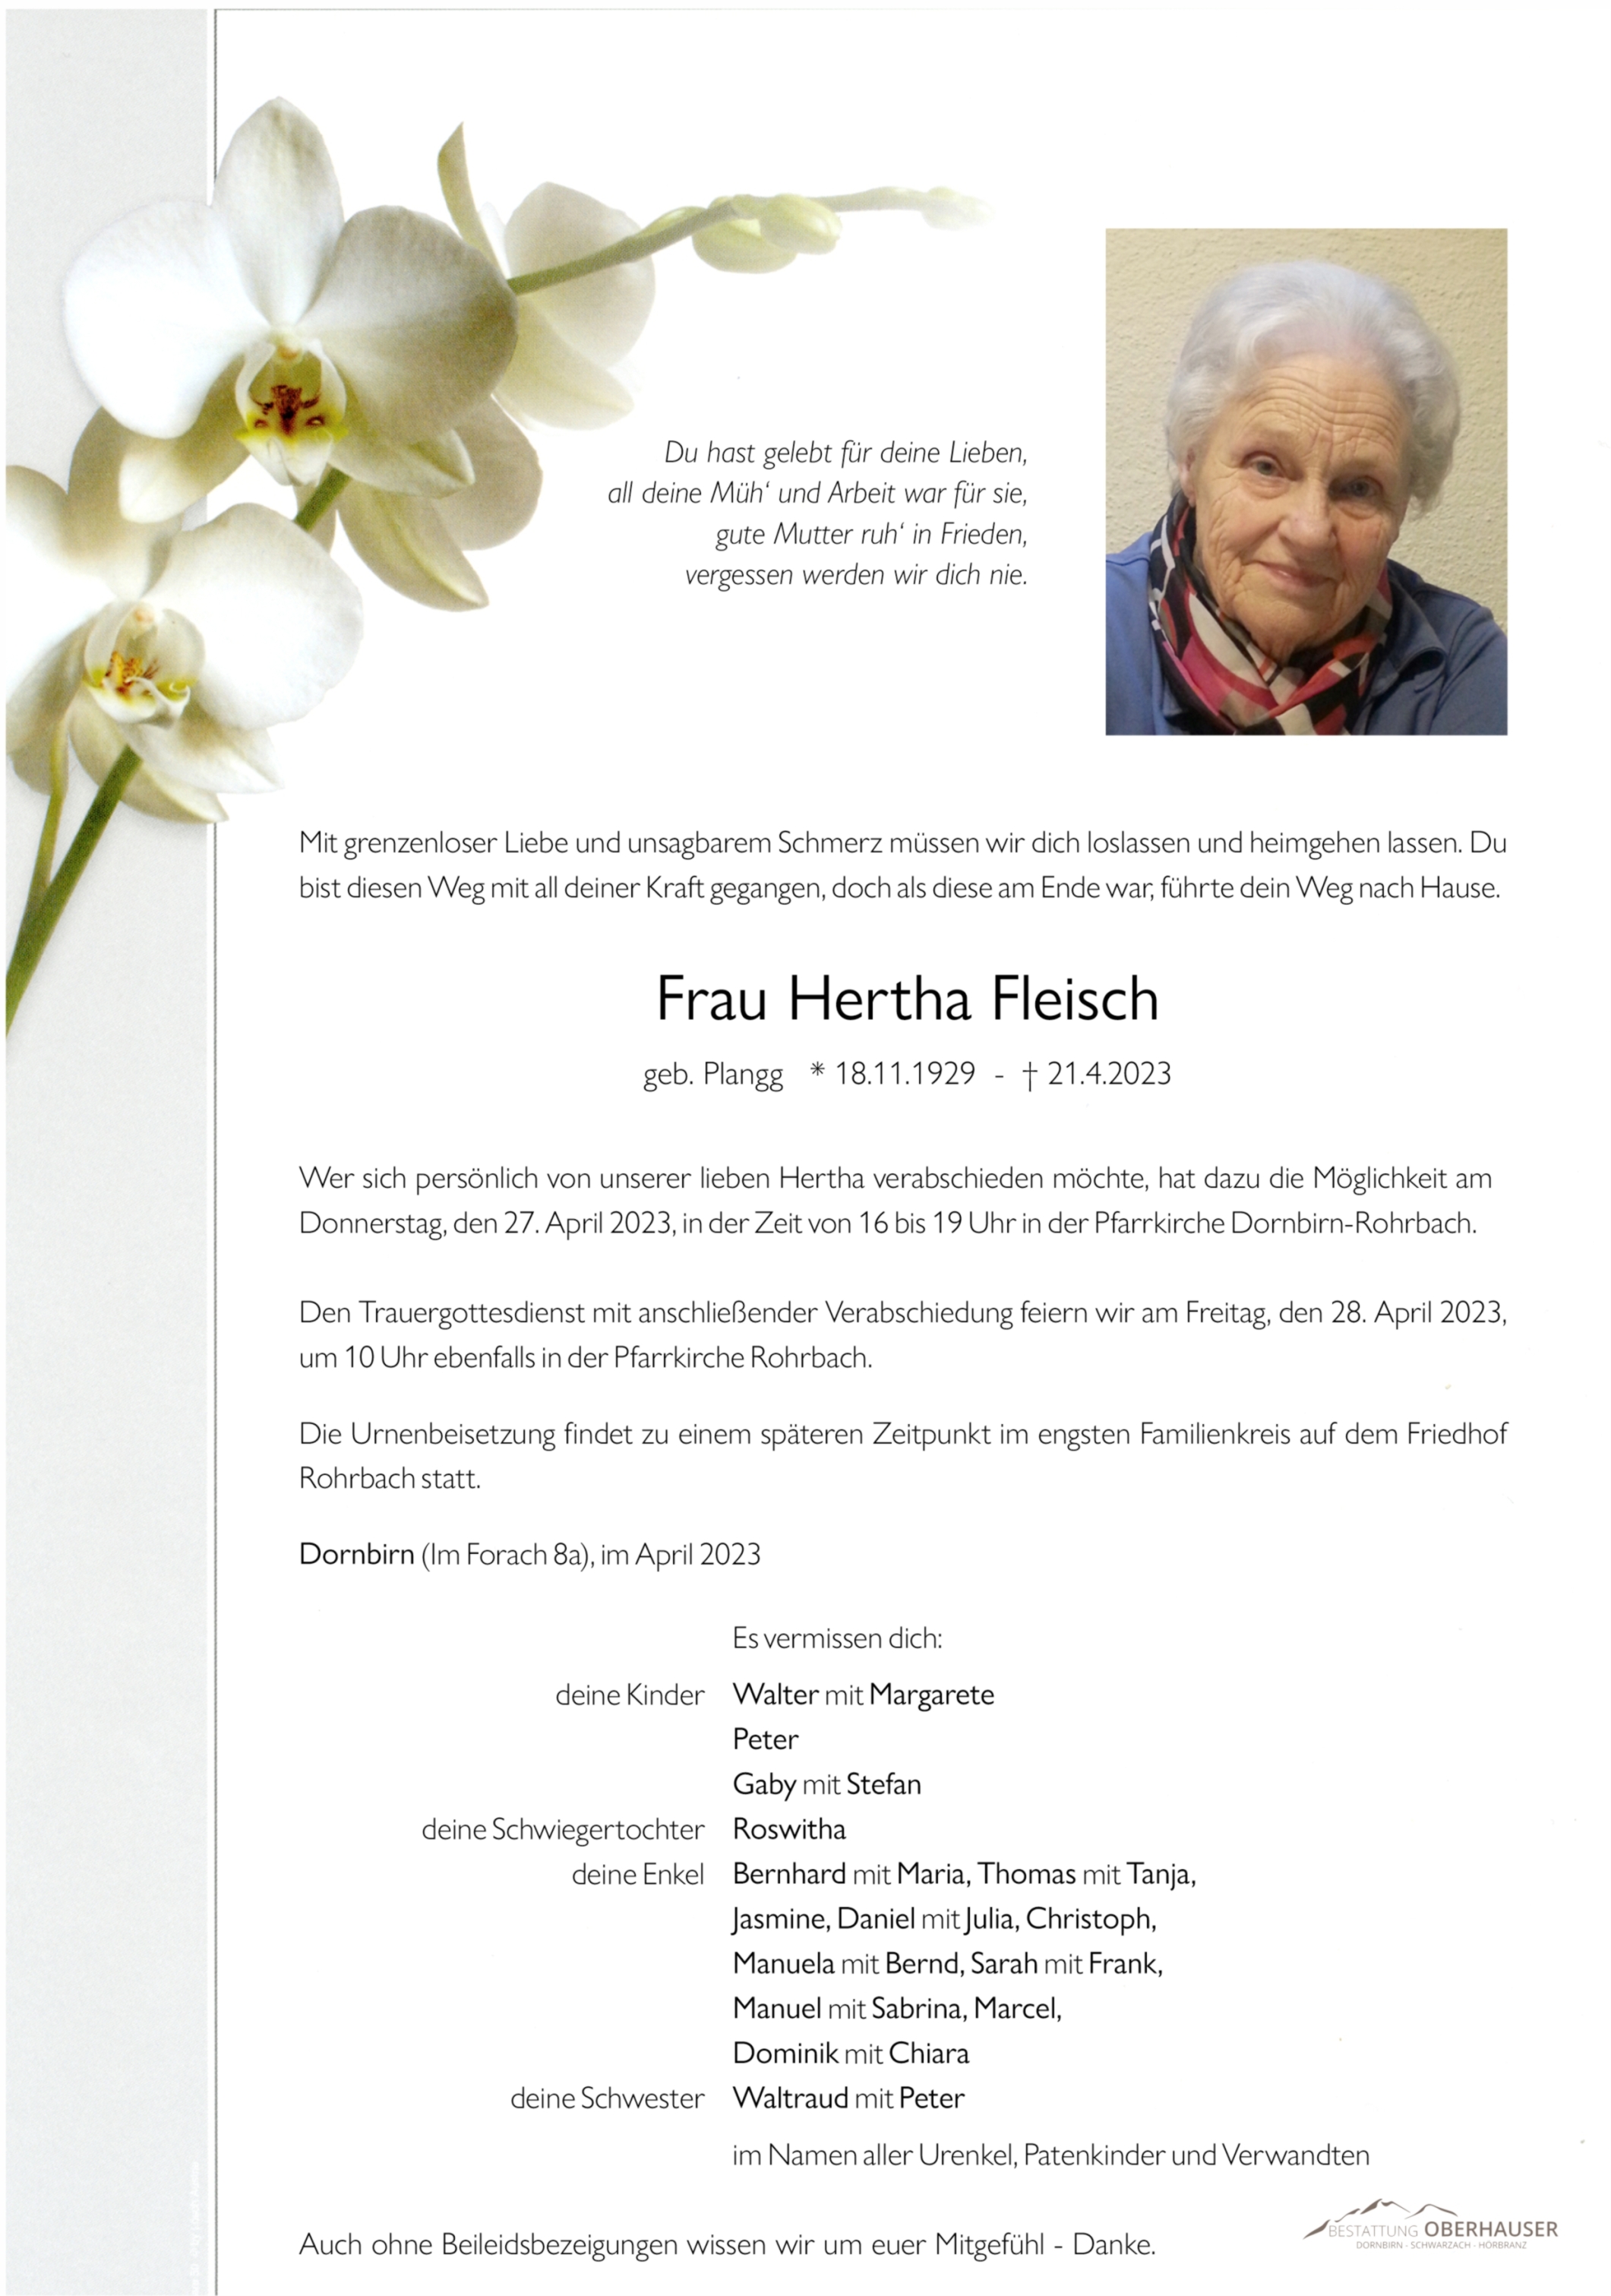 Hertha  Fleisch